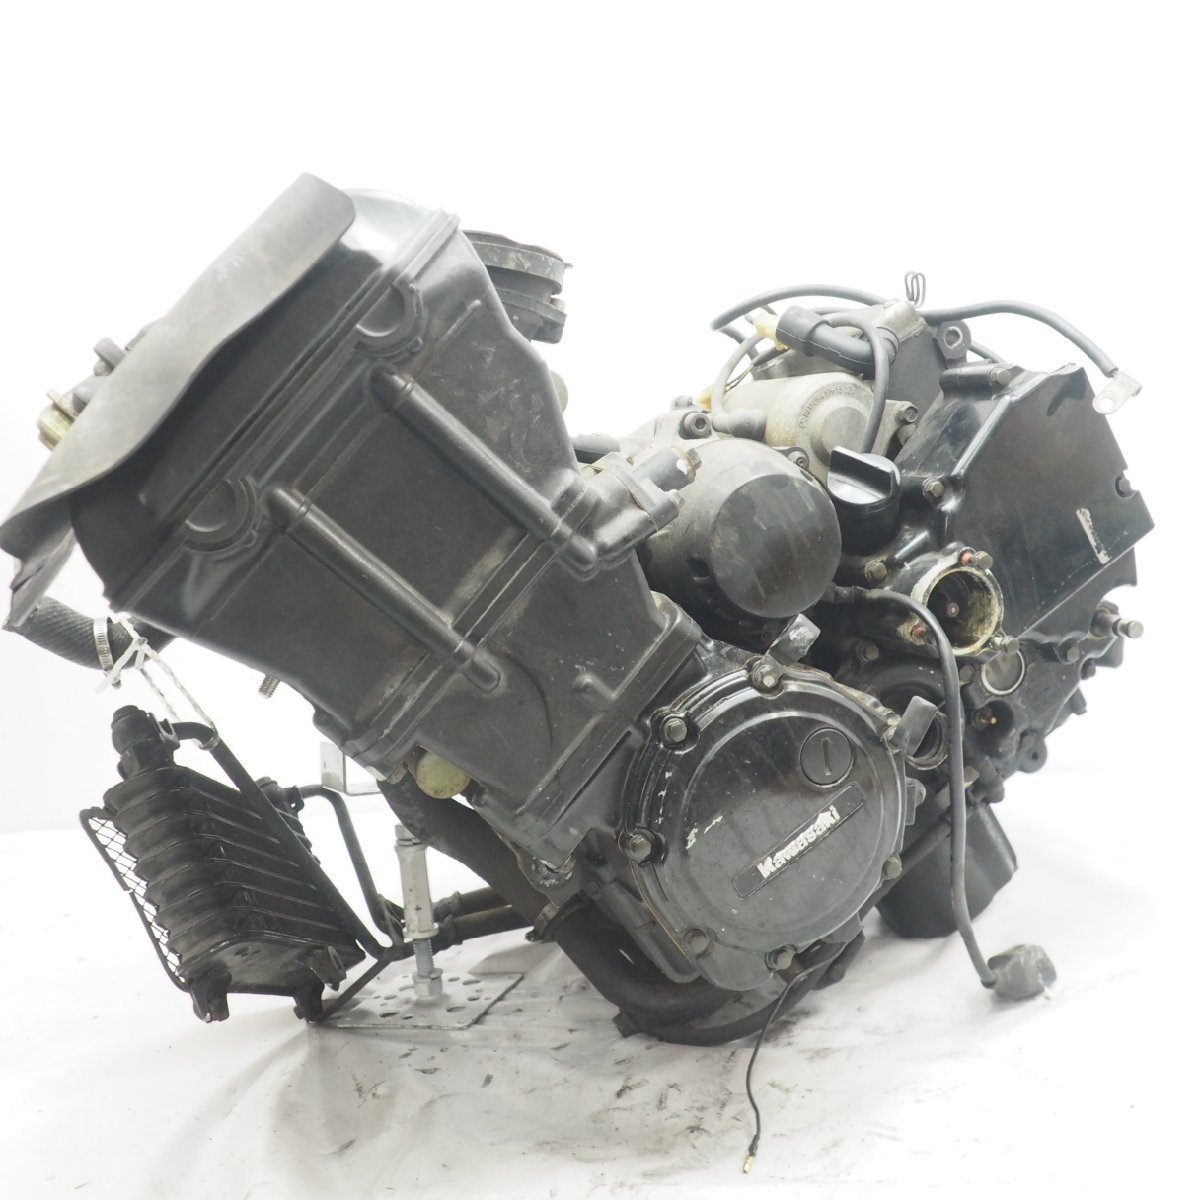 ZZ-R1100D エンジン engine ZZR1100D D3 95年 ZZ-R1100 載せ替えベース等GPZ_画像9